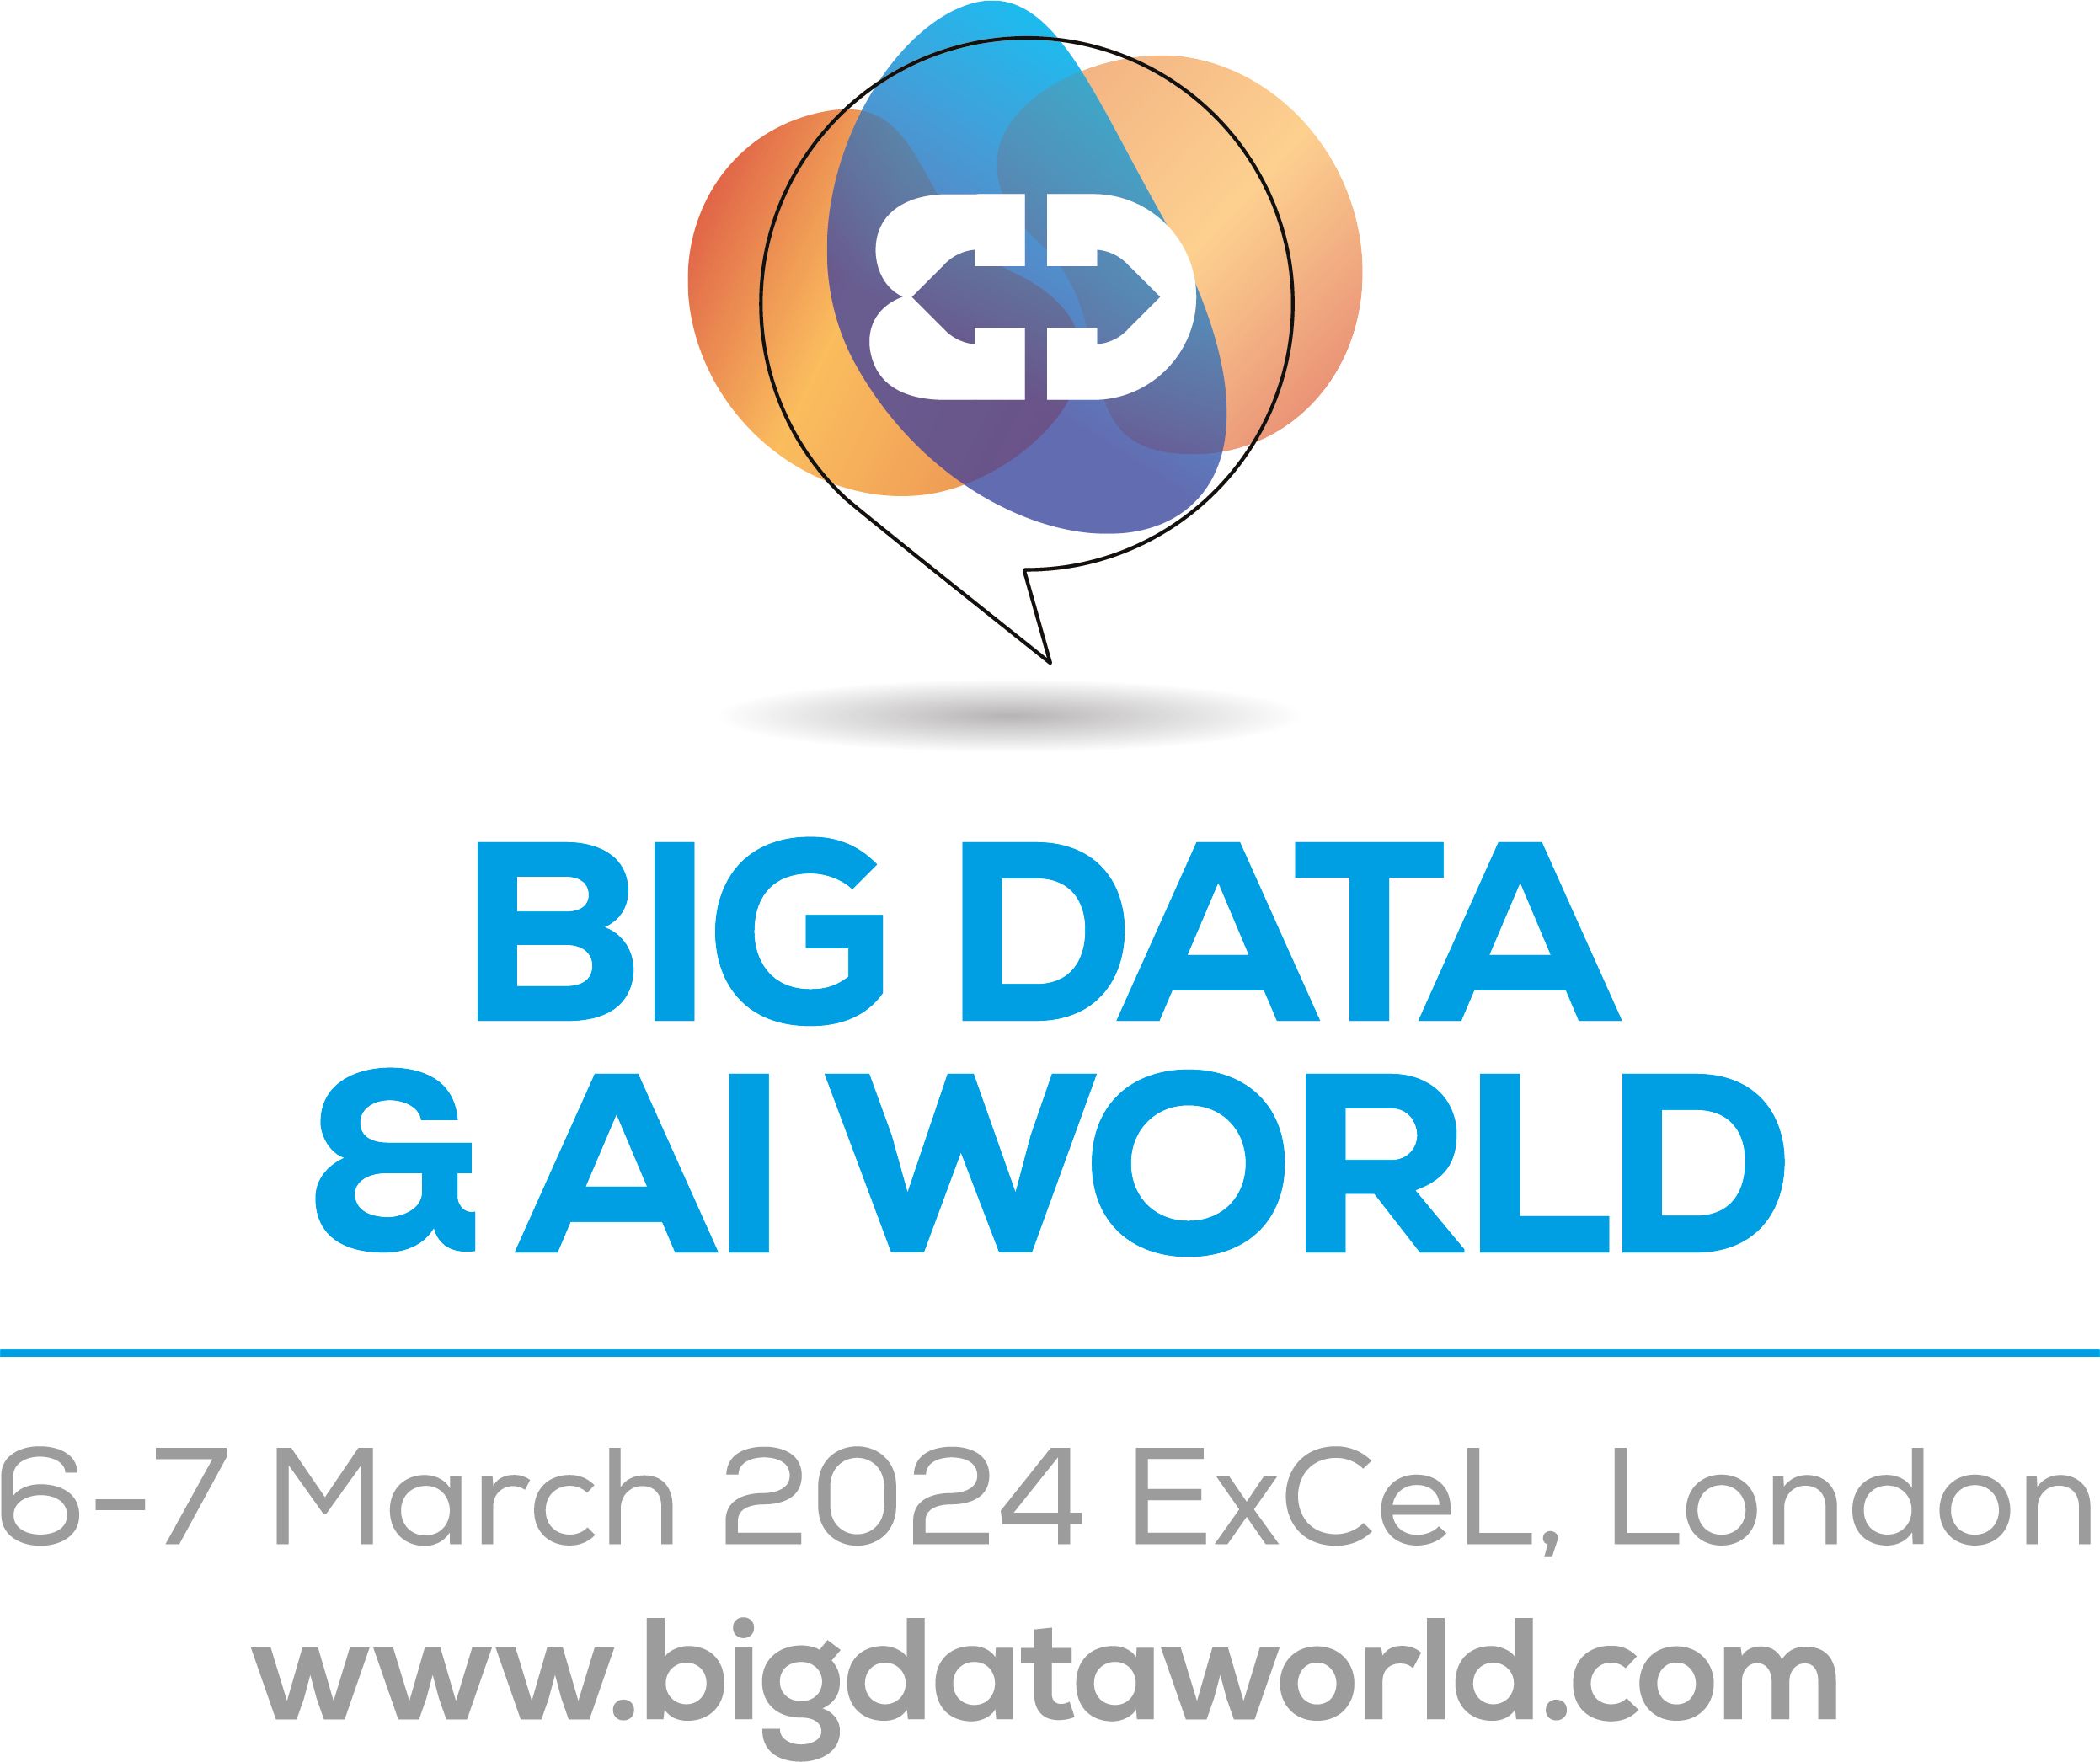 Big Data & AI World 2024 show logo